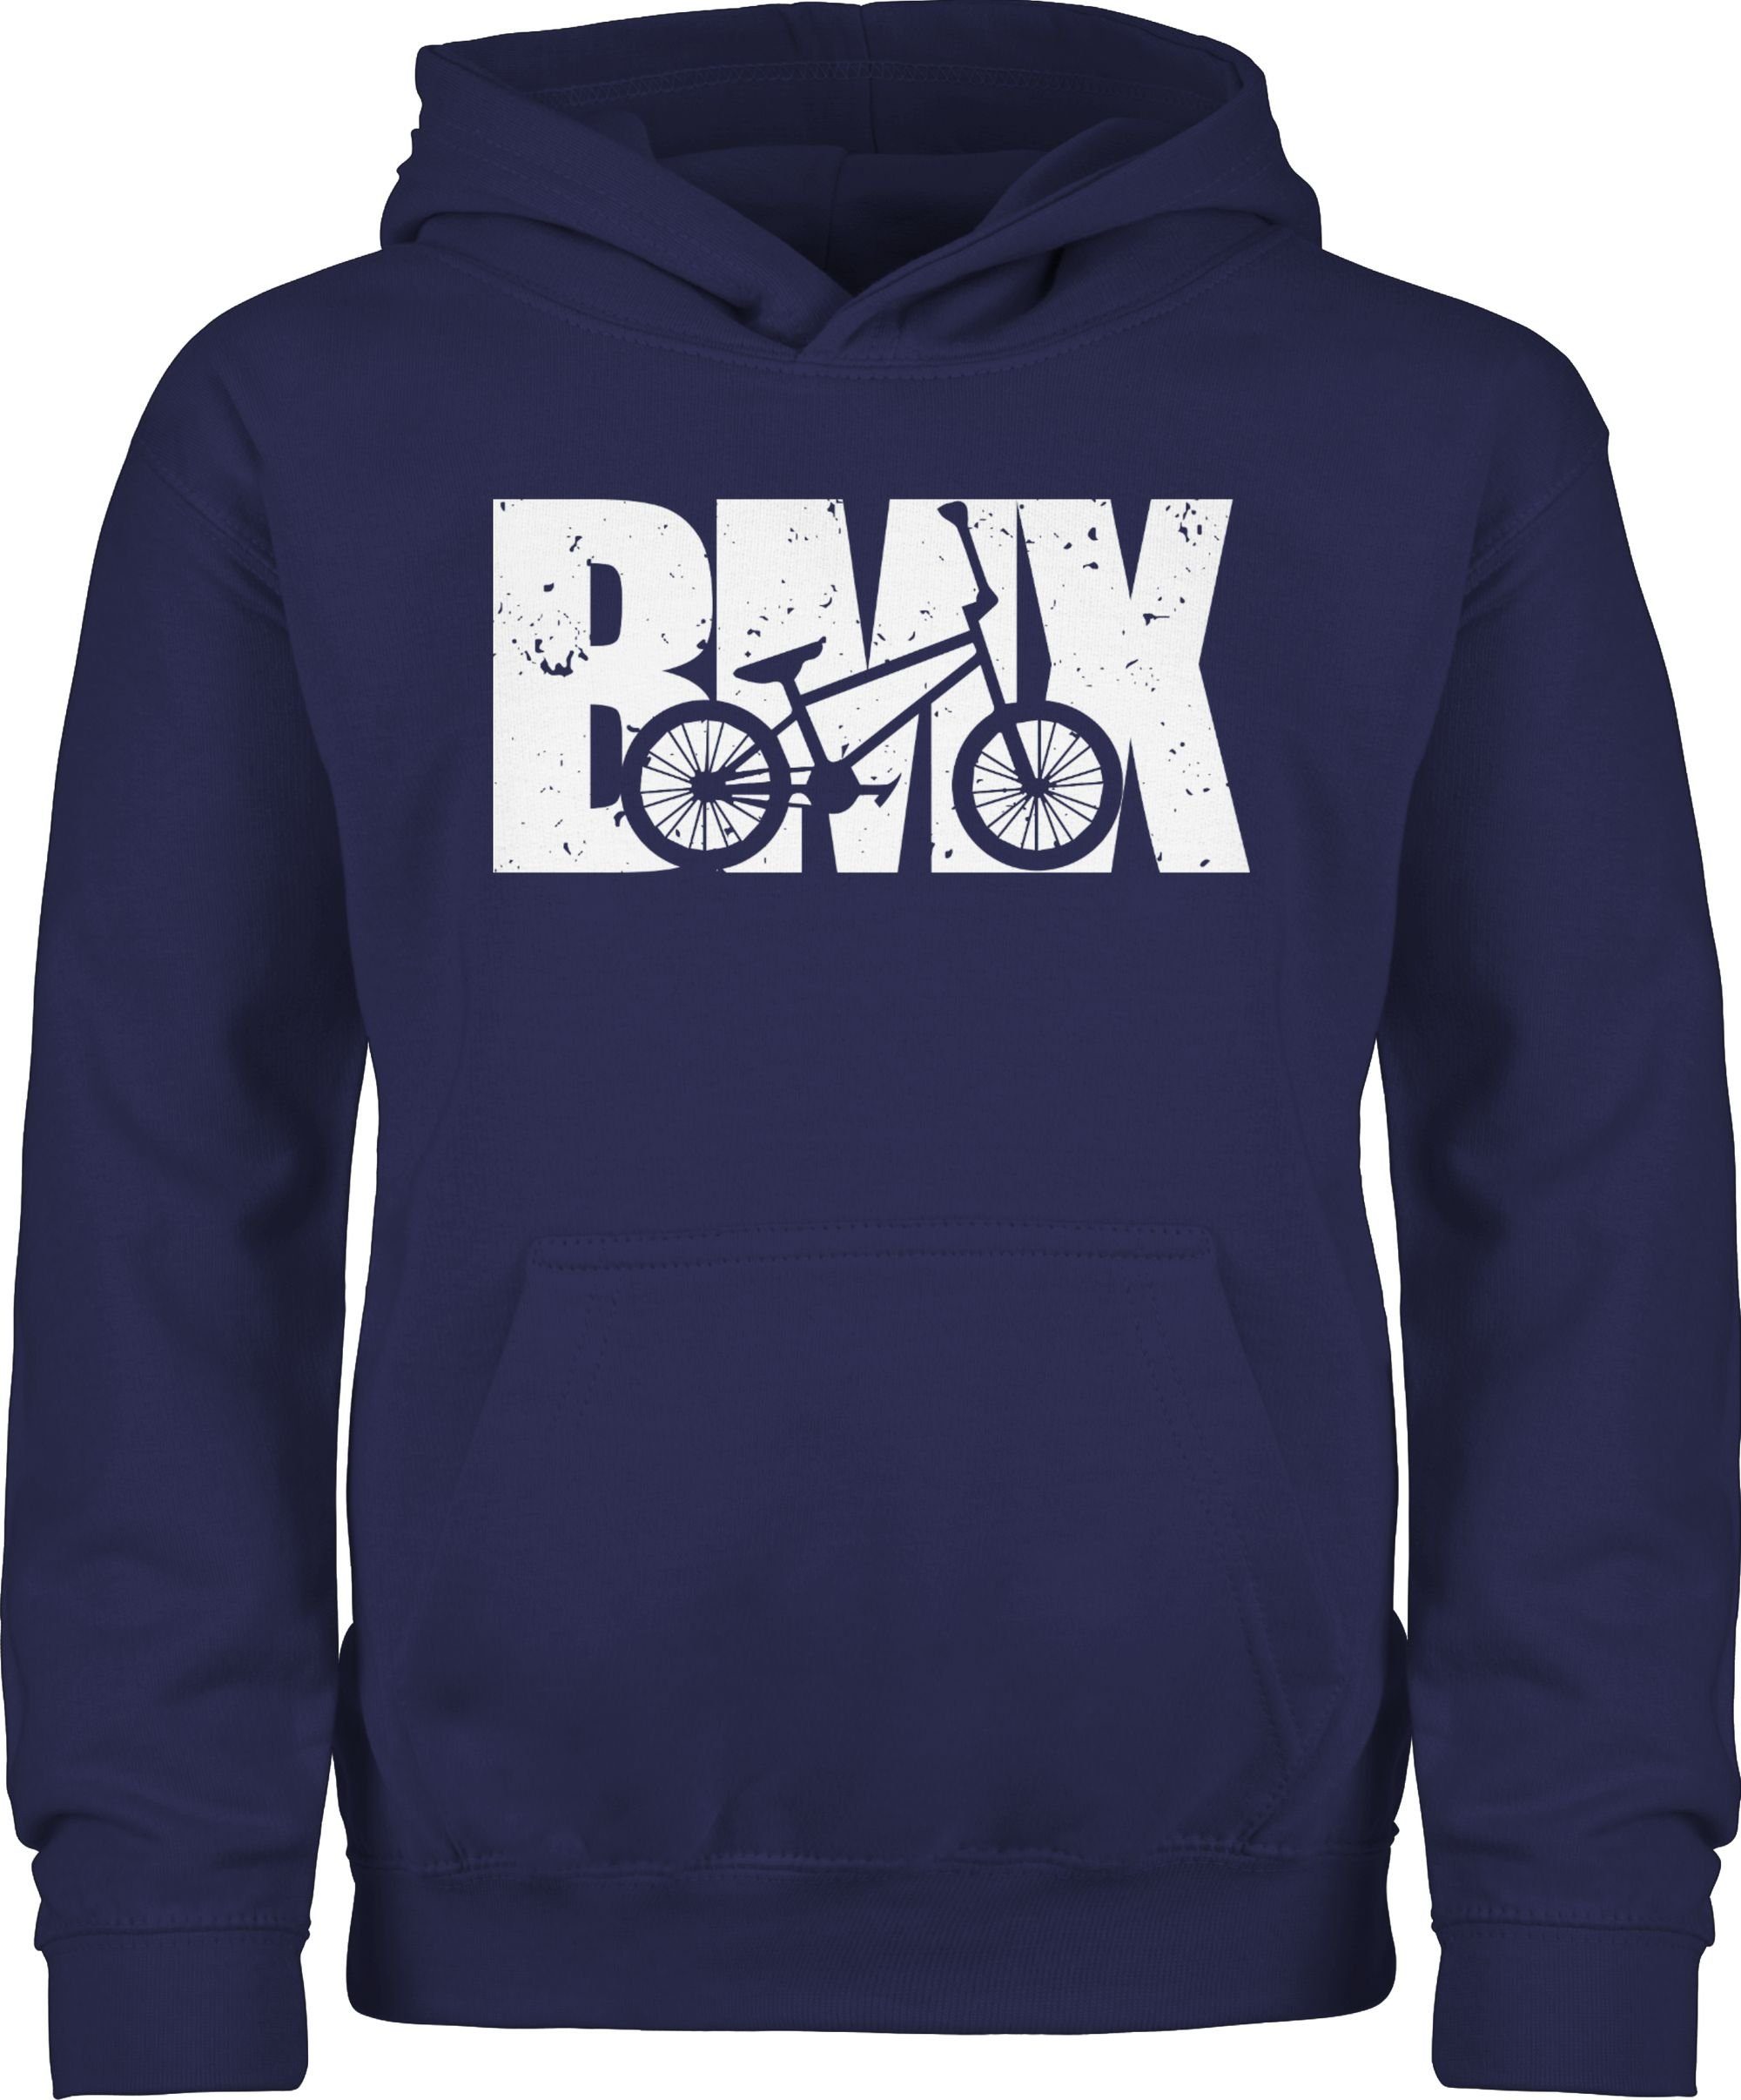 Shirtracer Hoodie Bmx Fahrrad weiß Kinder Sport Kleidung 3 Navy Blau